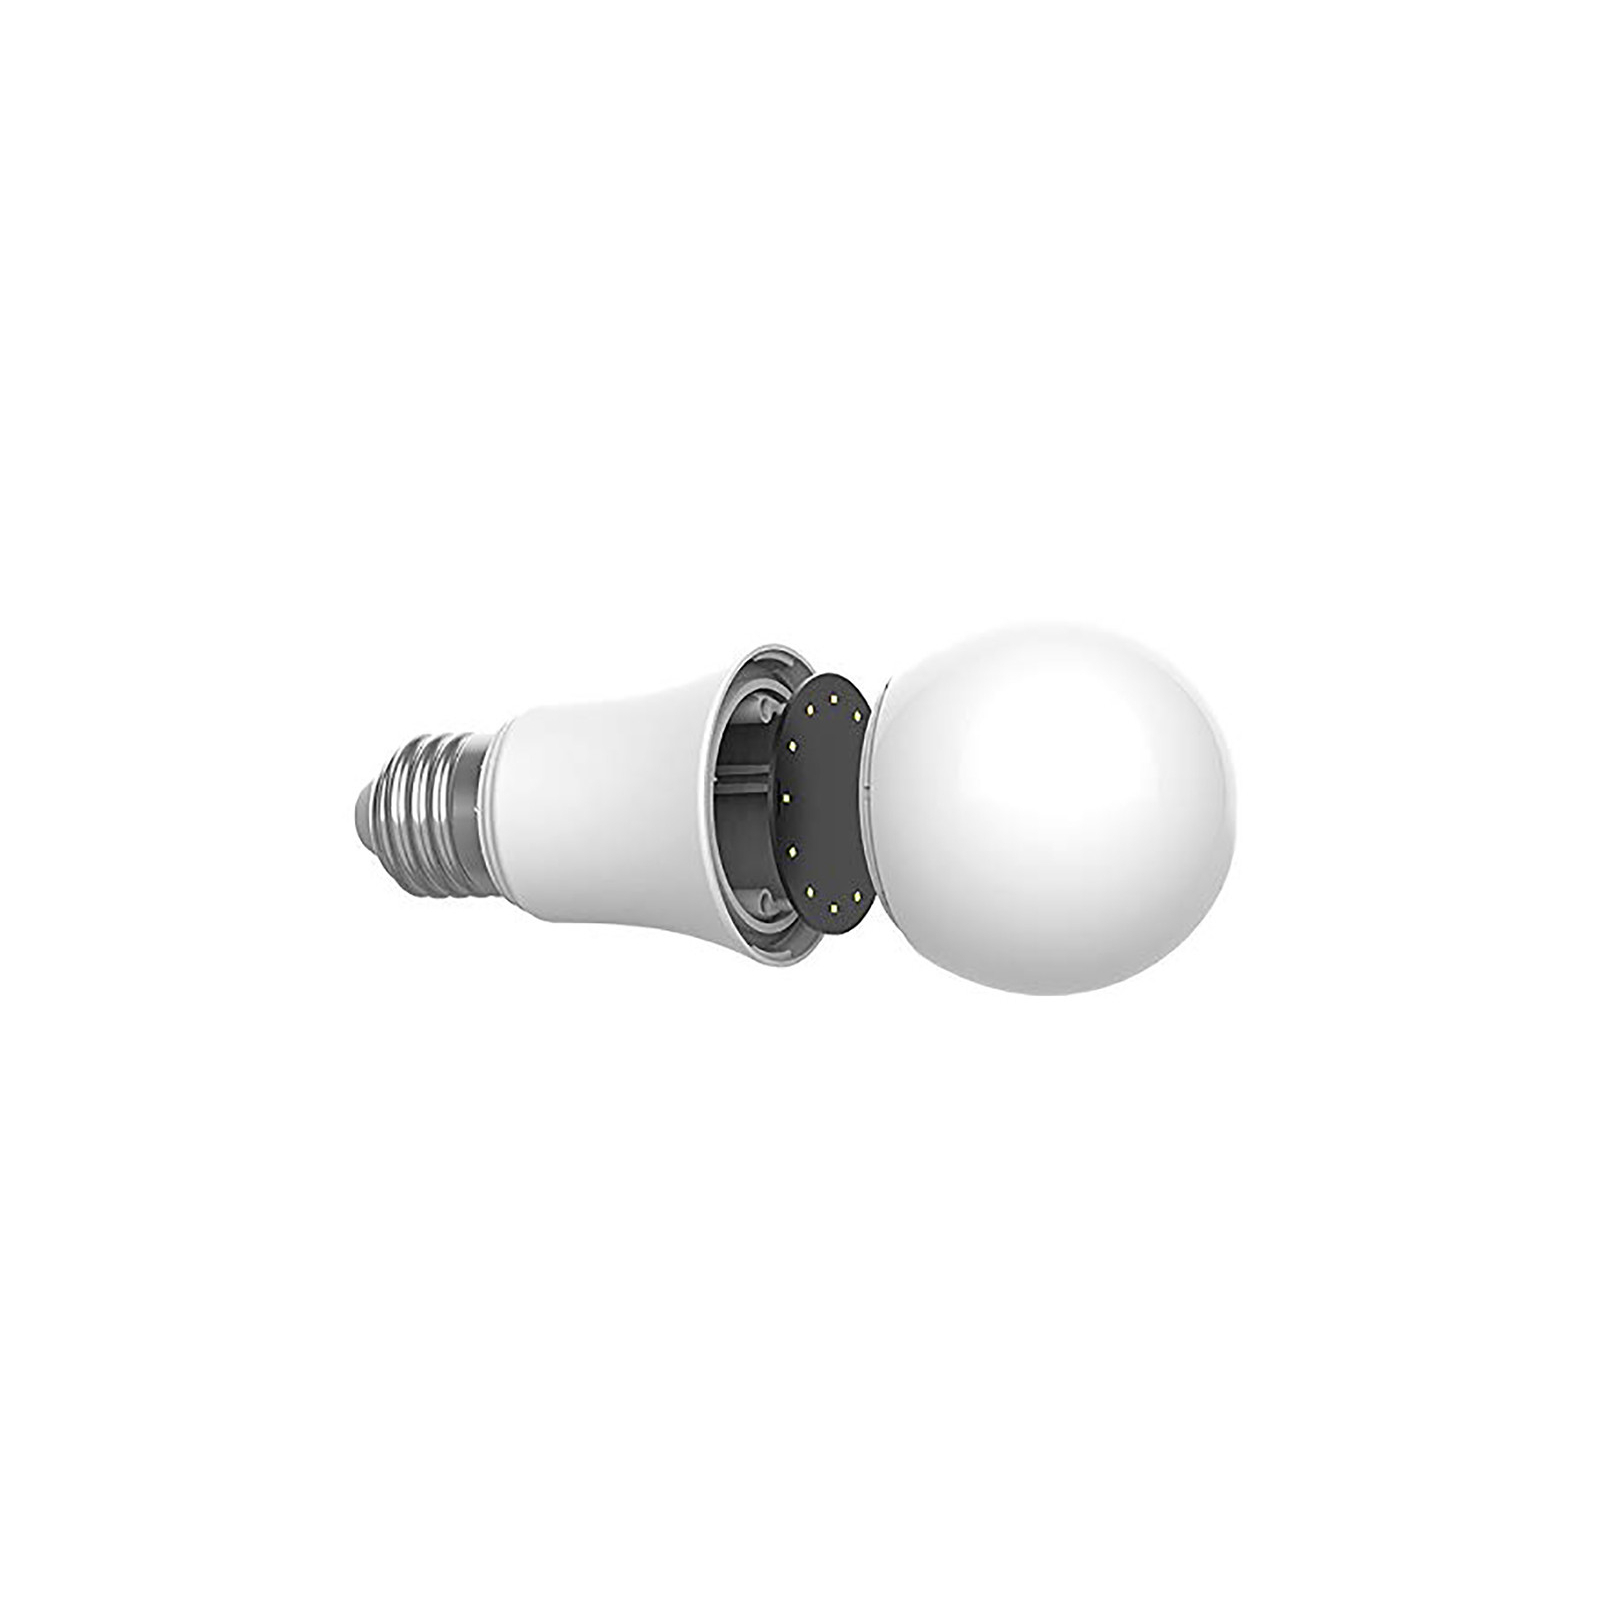 Розумна лампочка Aqara LED Light Bulb (ZNLDP12LM) зображення 2